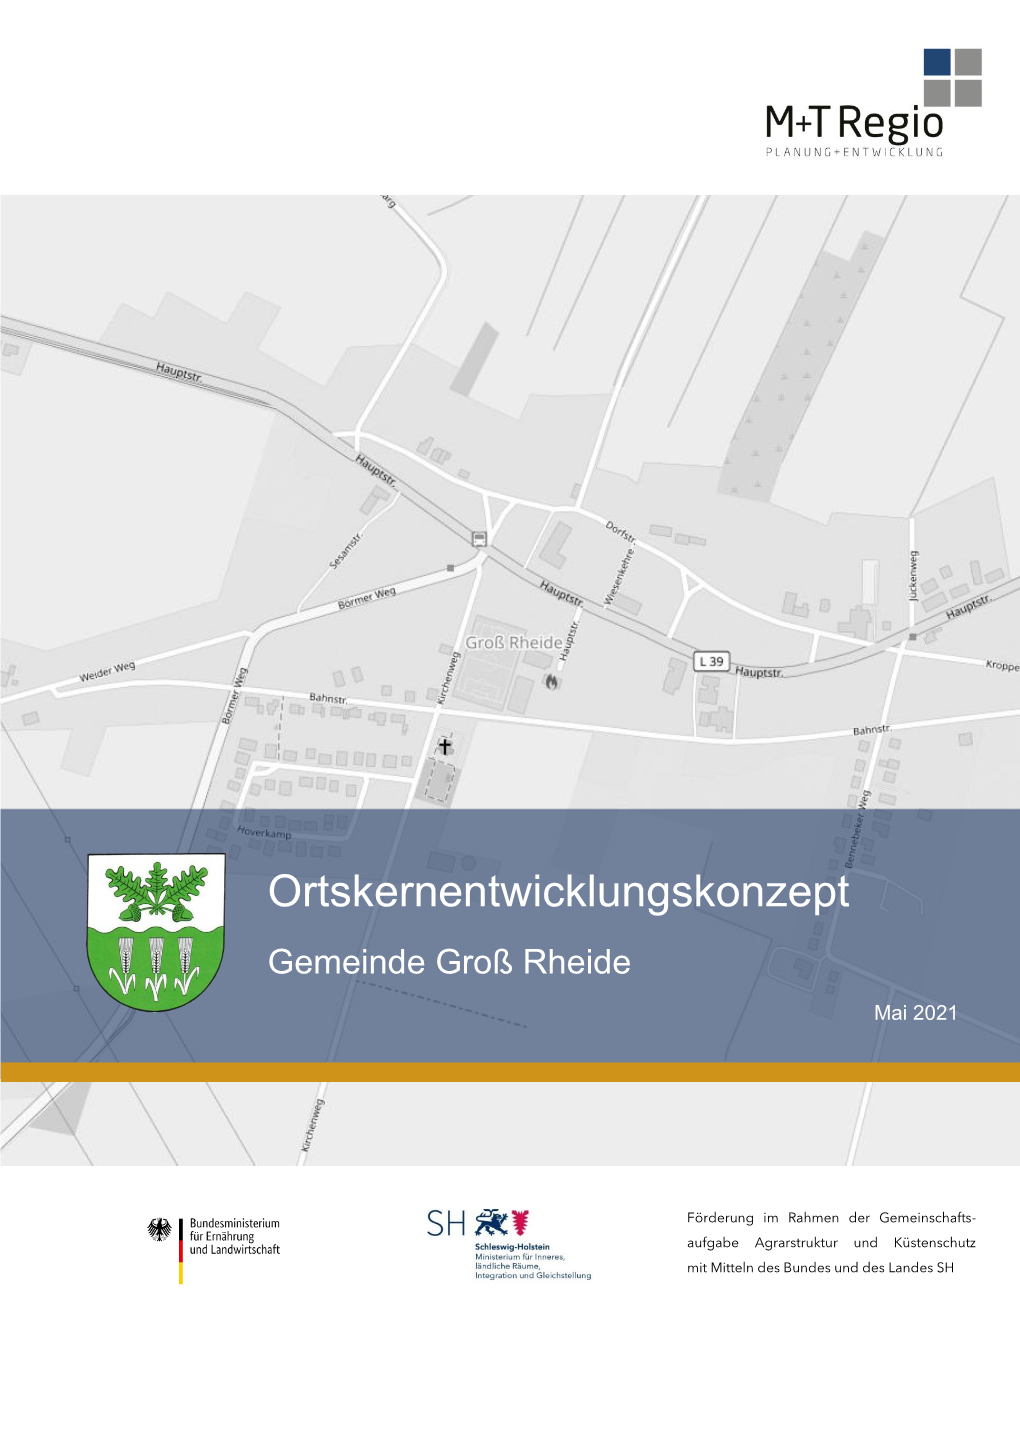 Ortskernentwicklungskonzept Gemeinde Groß Rheide